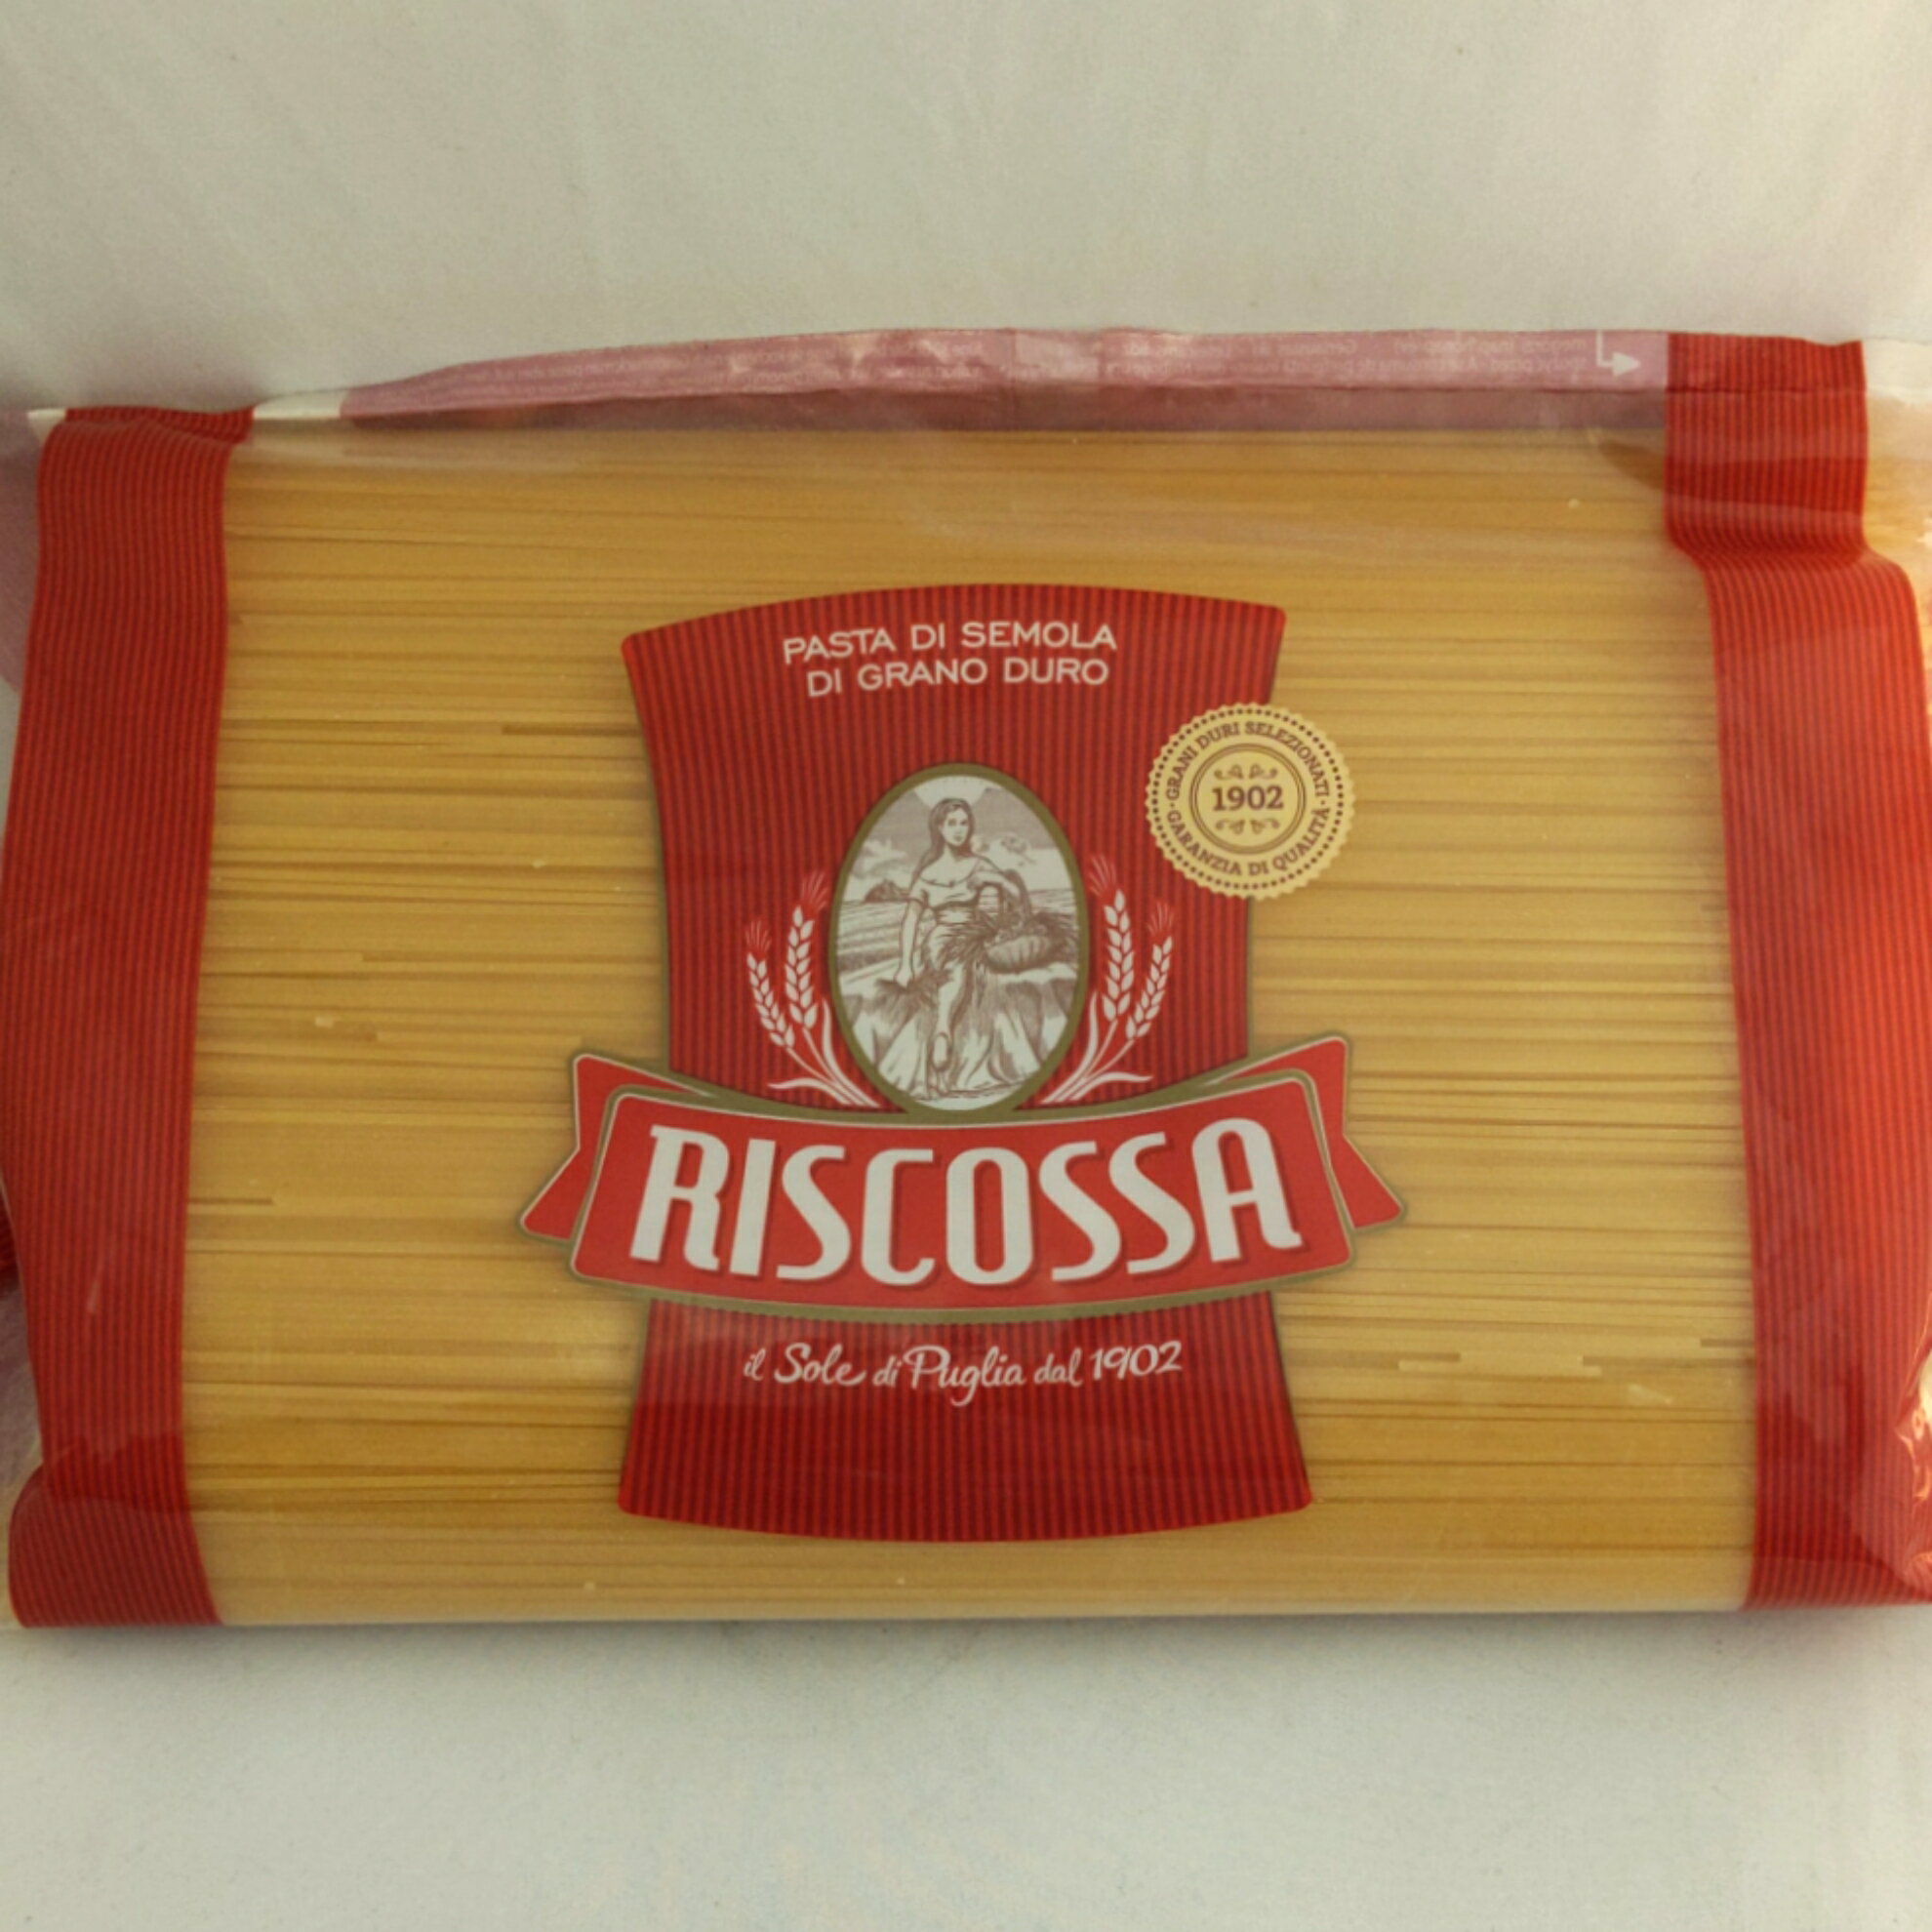 品名リスコッサ スパゲッティーニ（1.4mm）原材料名デュラム小麦セモリナ内容量3kg原産国（地域）イタリア保存方法直射日光・高温多湿を避けて常温で保存してください。ケース購入時入数5袋商品特徴「リスコッサ スパゲッティーニ」は、カラーの鮮やかさが特徴のパスタです。 蛋白質とグルテンの割合が高く、不純物の少ない分パスタのカラーがより鮮やかなのが特徴。製造工程においては長年の伝統と技術で安定した品質とハイグレードな商品作りを可能にしました。調理方法標準茹で時間6分